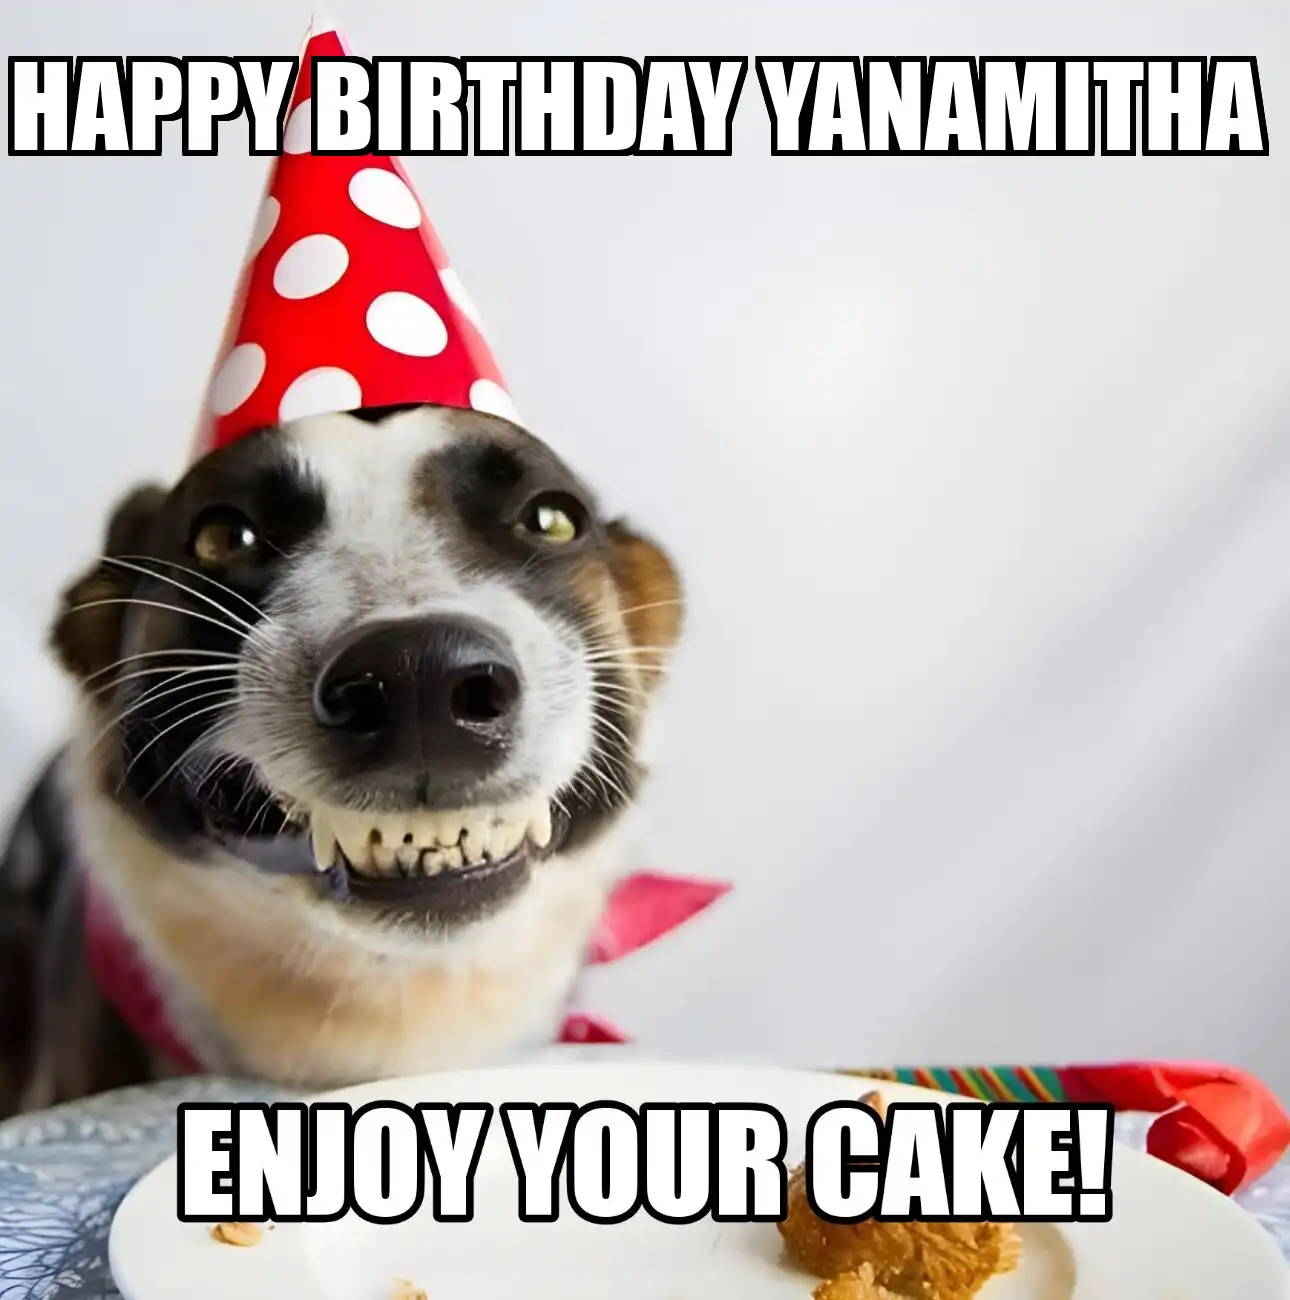 Happy Birthday Yanamitha Enjoy Your Cake Dog Meme